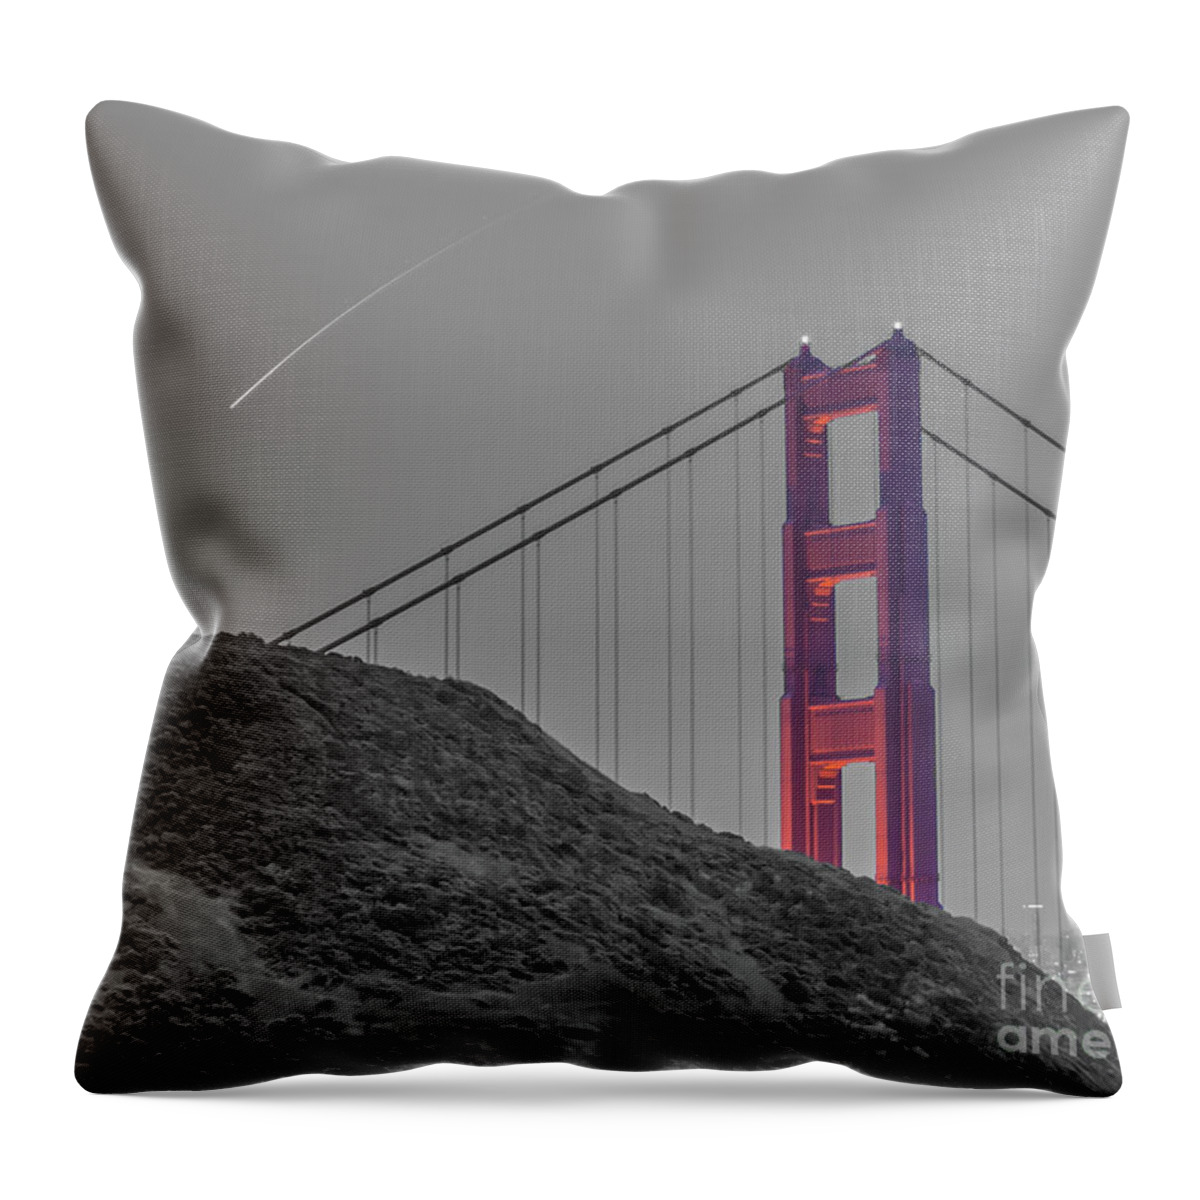 Golden Gate Bridge Throw Pillow featuring the photograph Golden Gate by Michael Tidwell